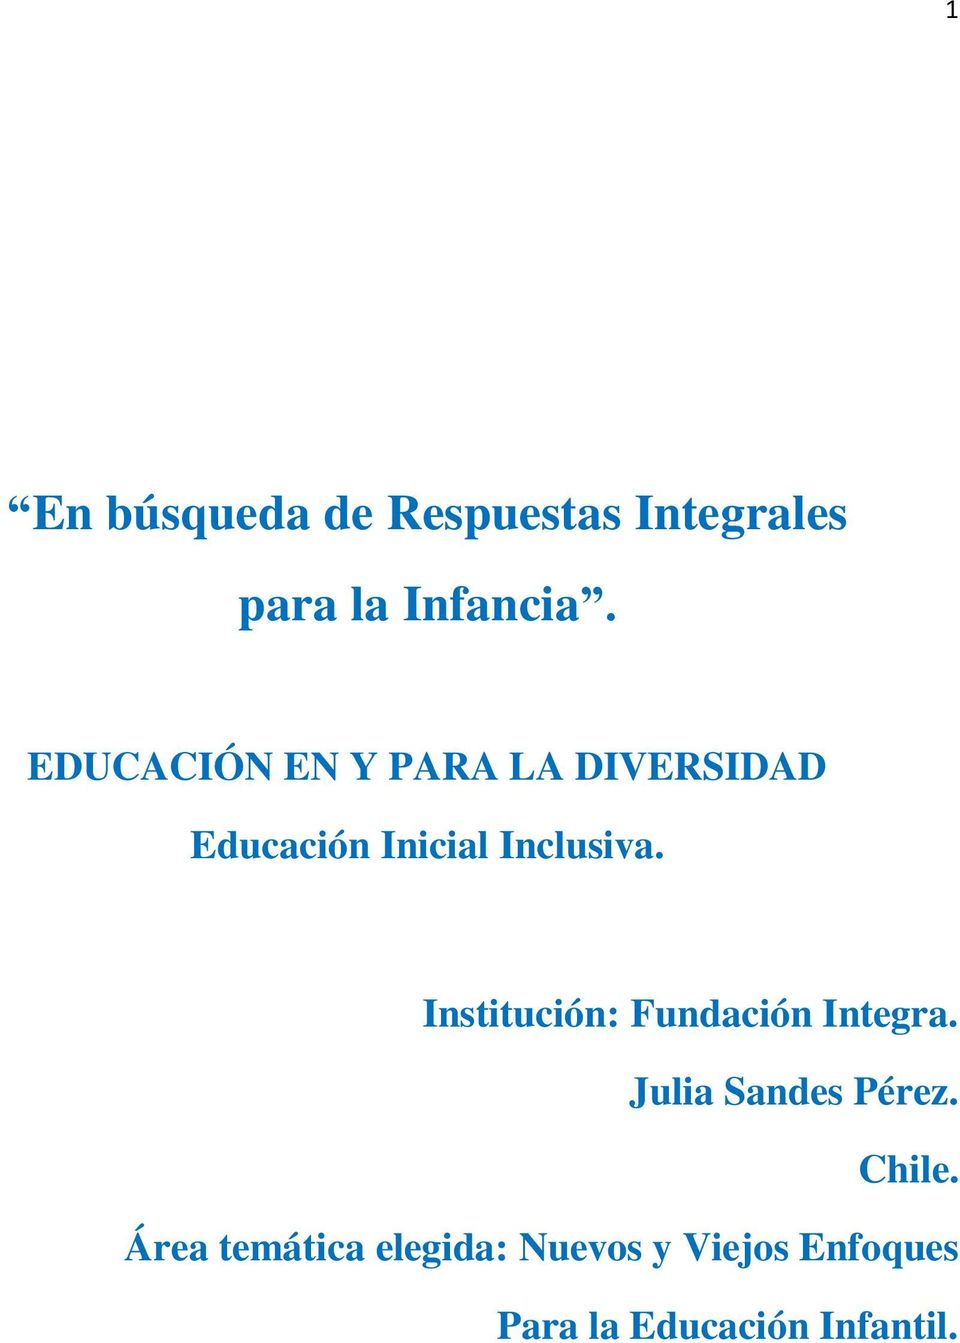 Institución: Fundación Integra. Julia Sandes Pérez. Chile.